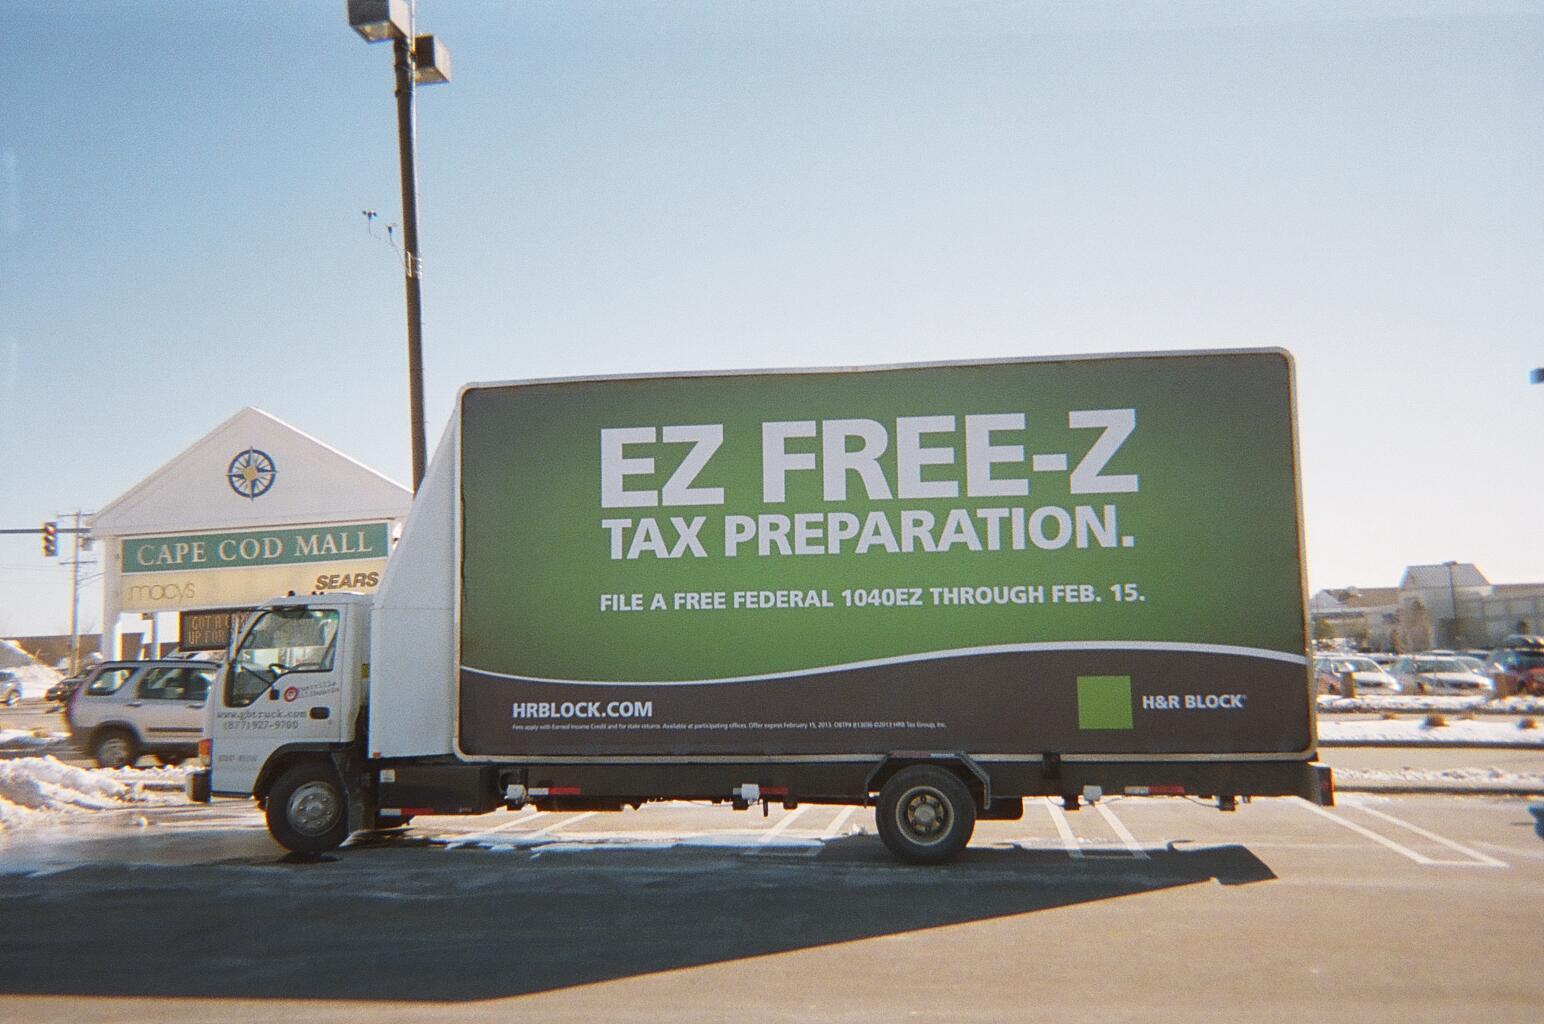 Cape Cod - H&R Block billboard truck